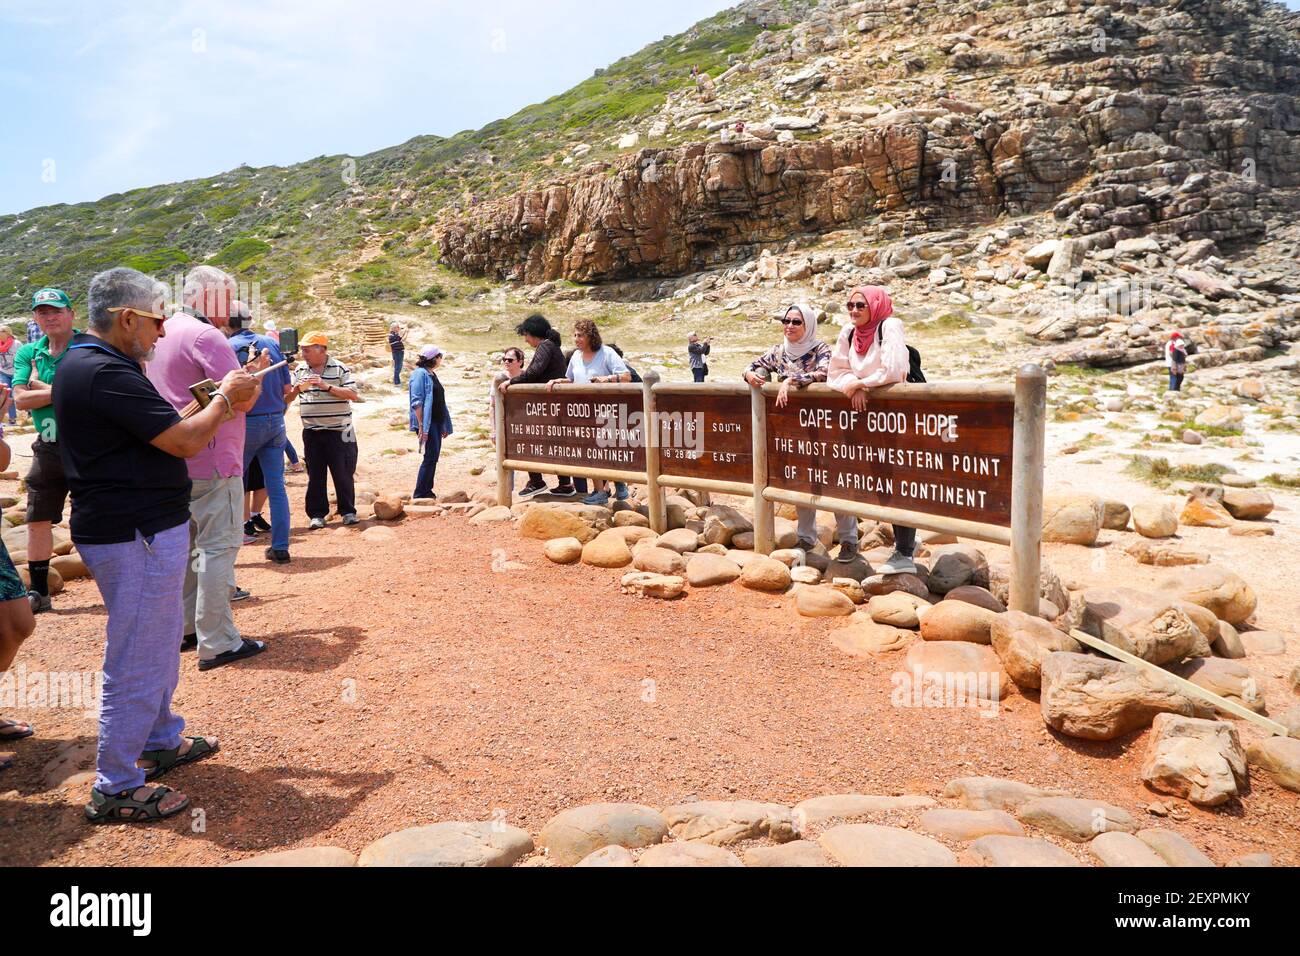 Kap der Guten Hoffnung Schild mit Touristen, Menschen posieren für Fotos am Cape Point Naturschutzgebiet, Südafrika Konzept Reise und Tourismus Stockfoto